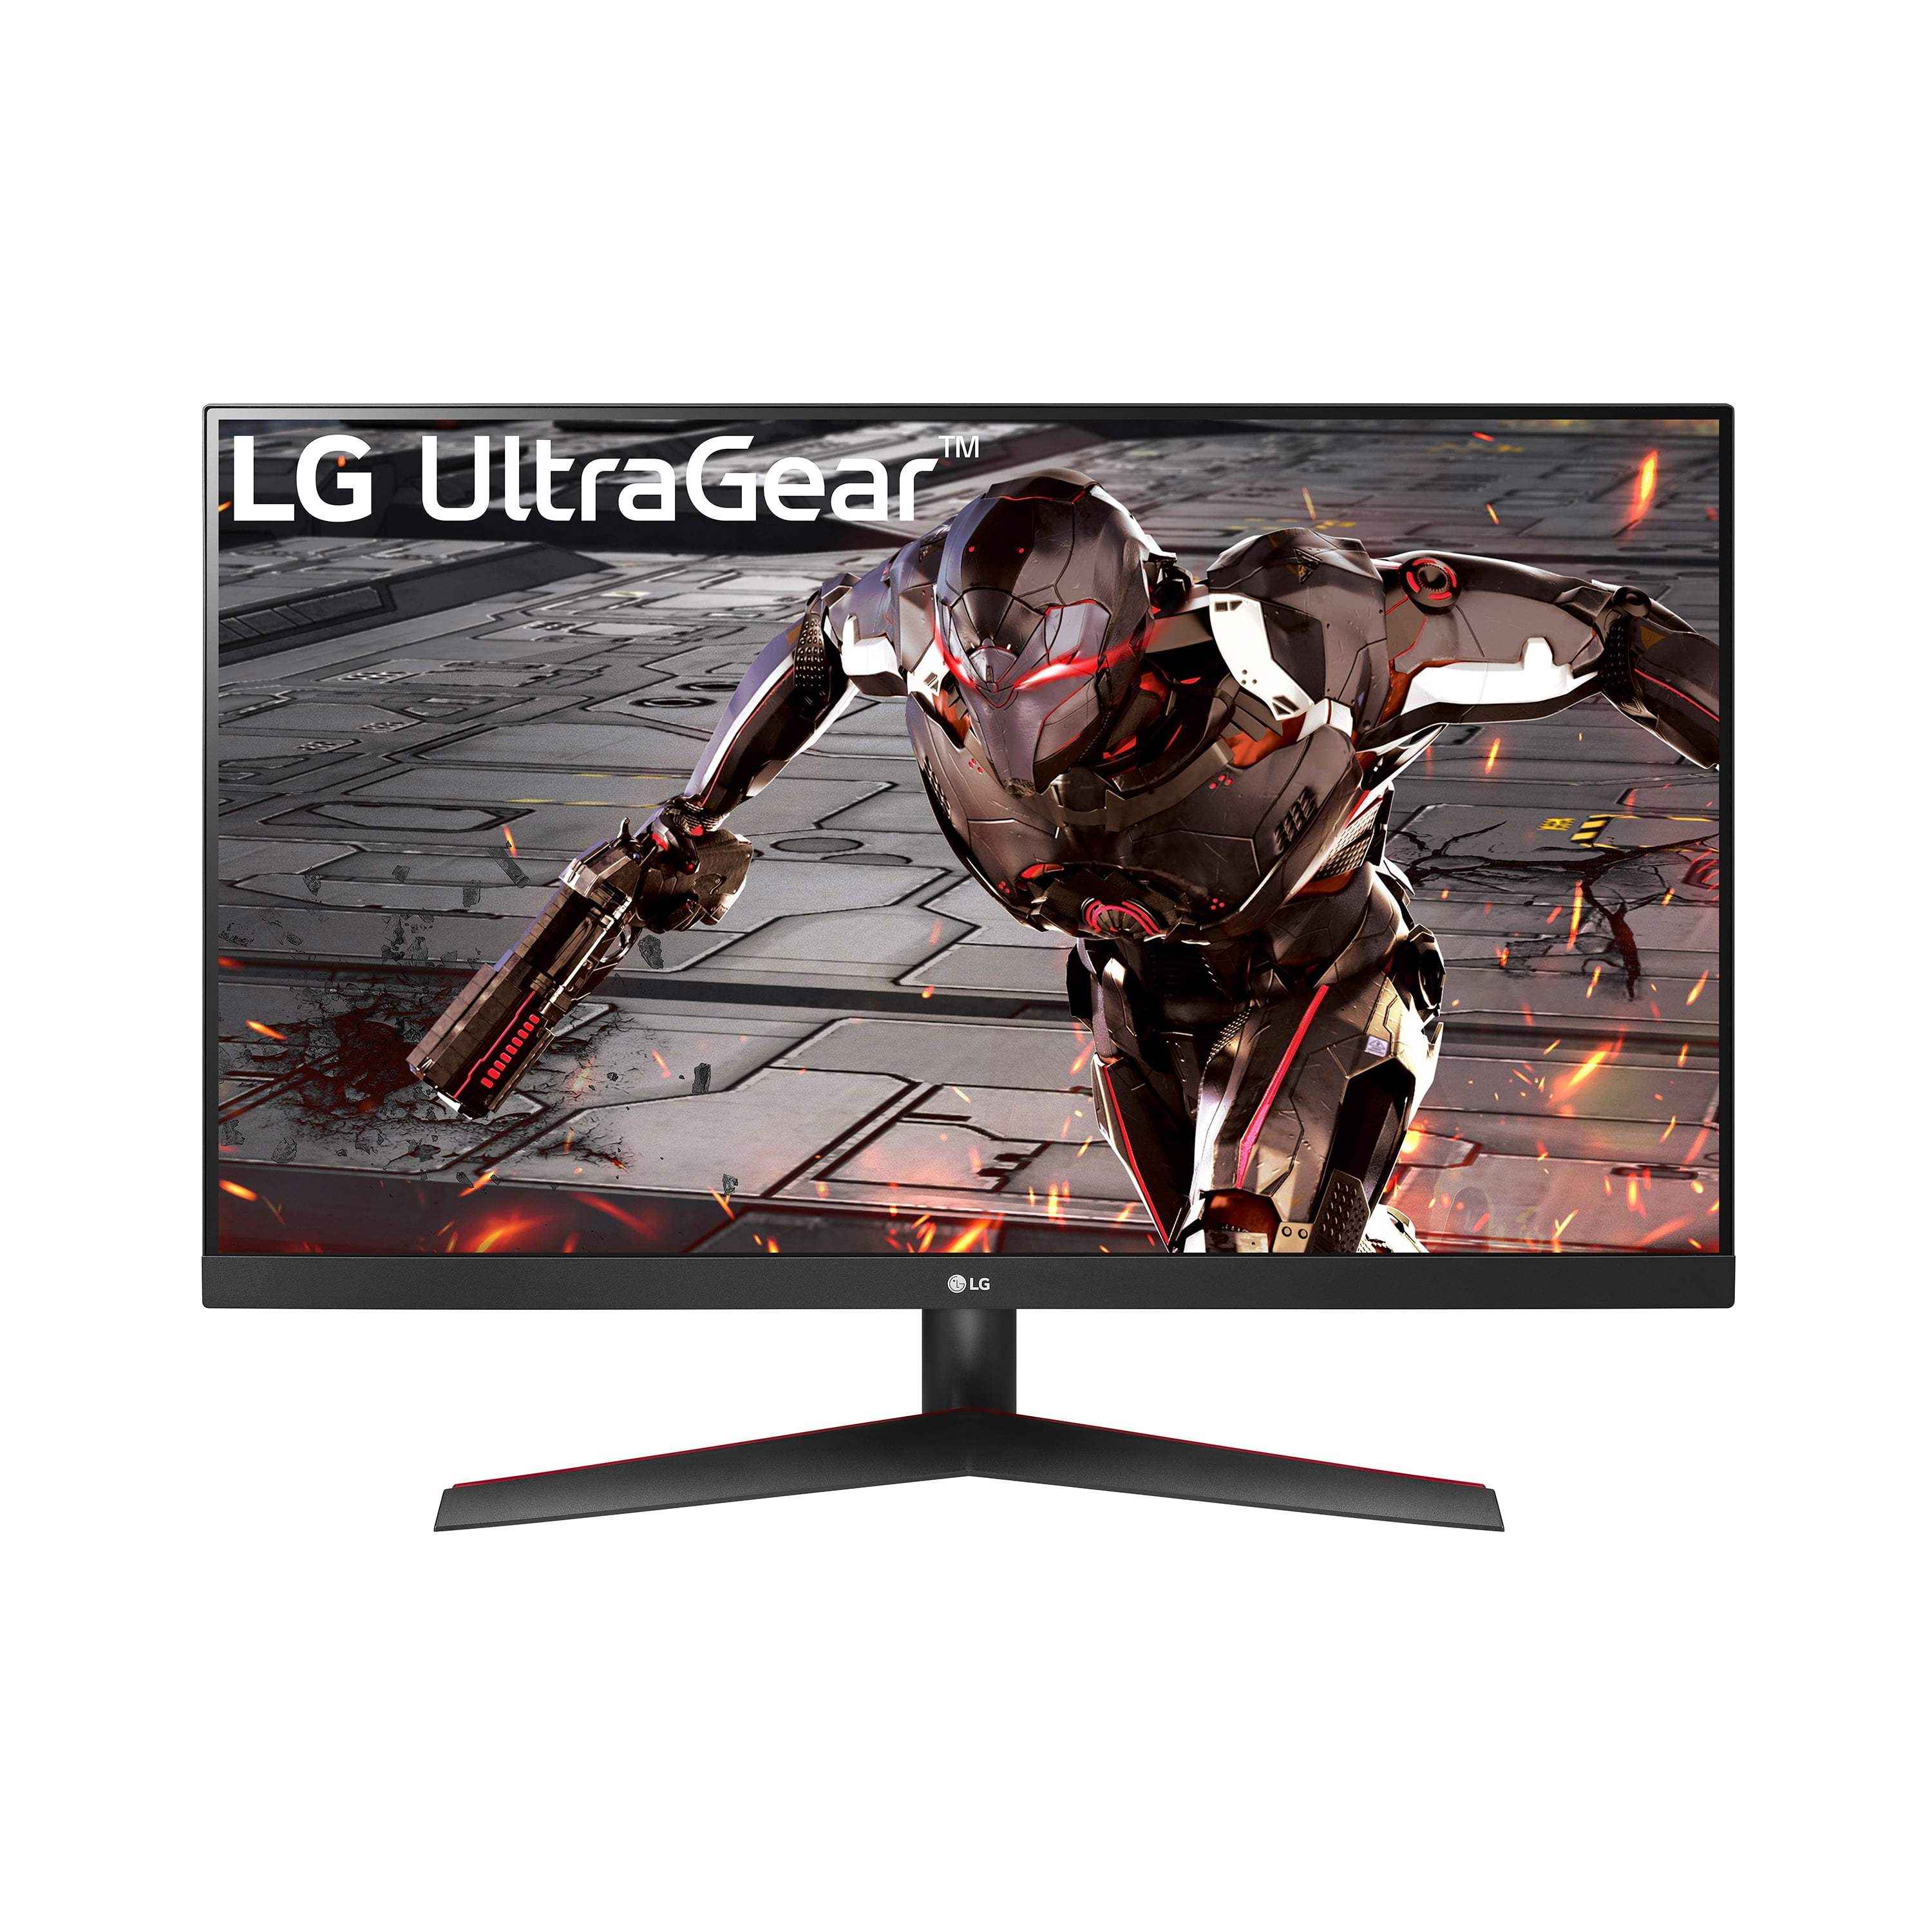 LG 32" Ultra-Gear QHD (2560 x 1440) Gaming Monitor, 165Hz, 1ms, Black 32GN600-B.Aus, New https://www.walmart.com/ip/406688031 $209